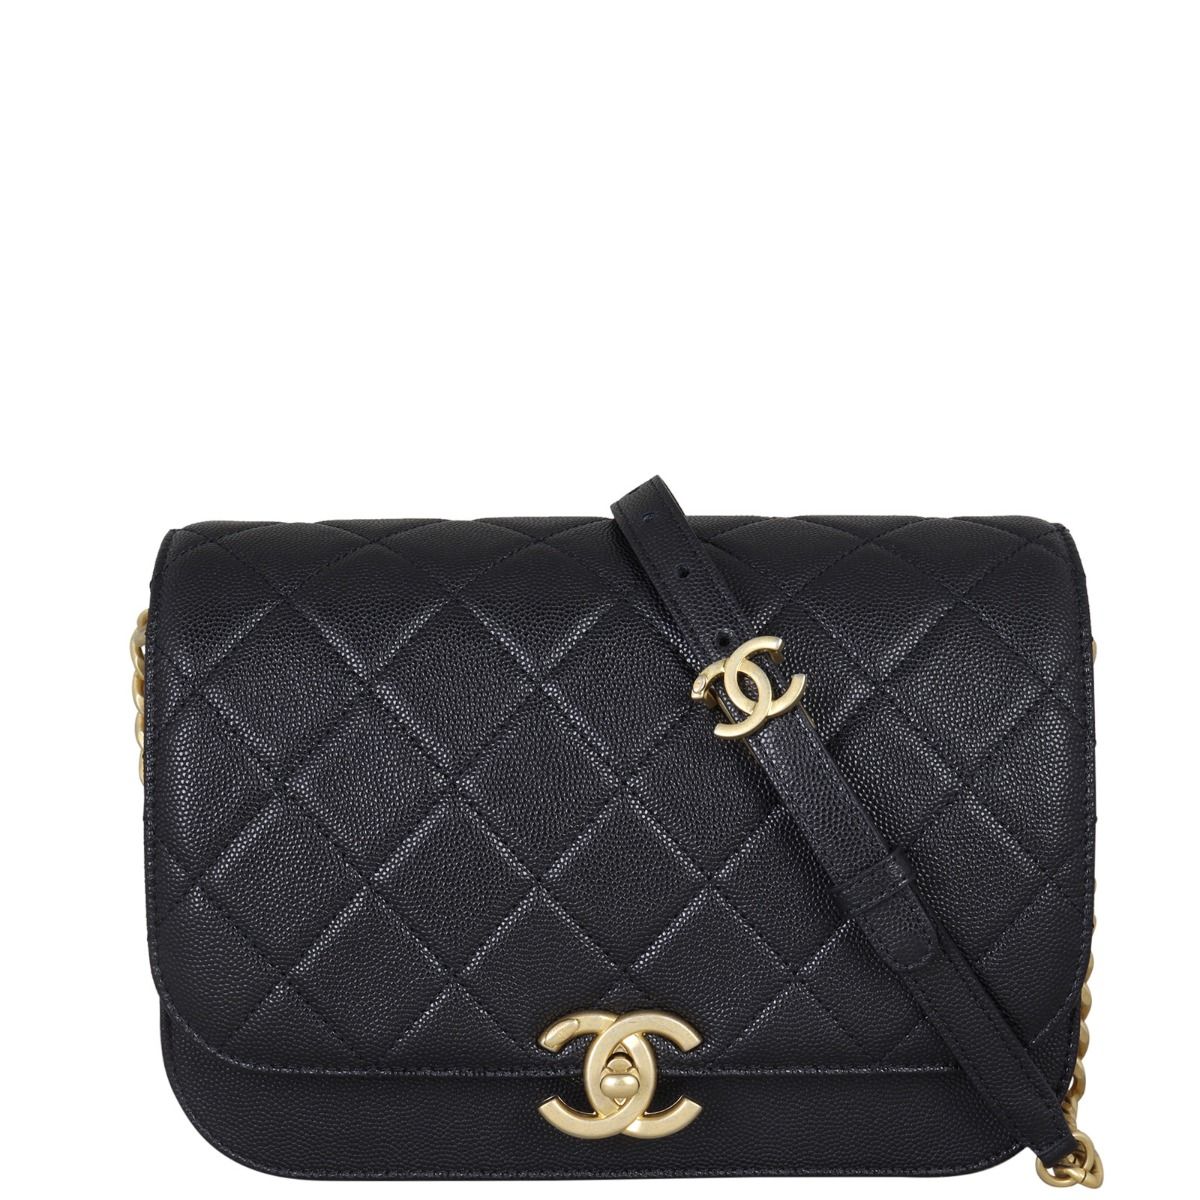 Slingbags, Chanel Bag